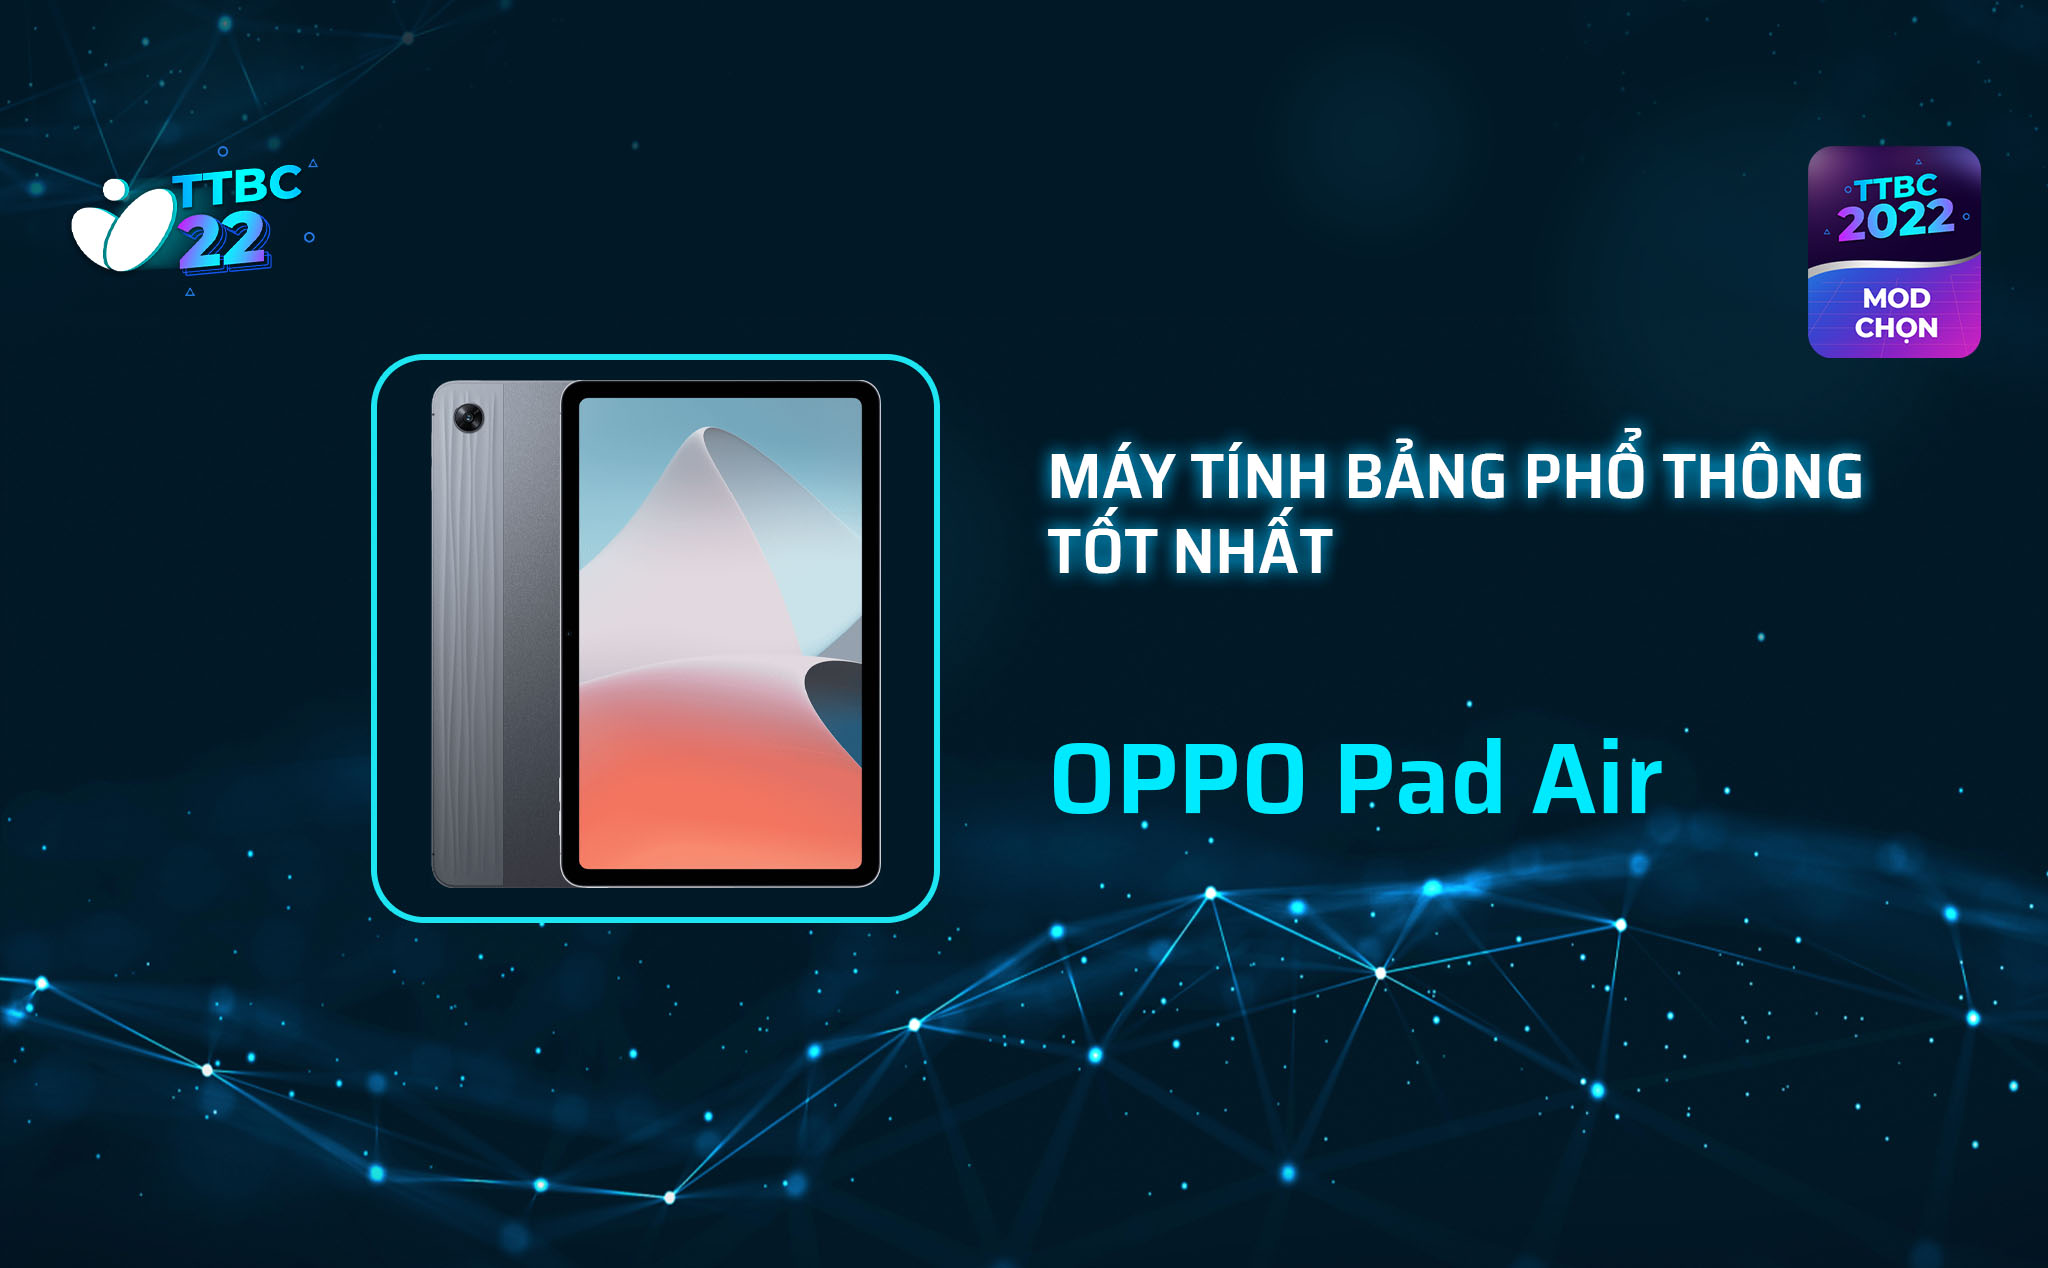 TTBC22 - Mod Choice: Máy tính bảng phổ thông tốt nhất chính là OPPO Pad Air